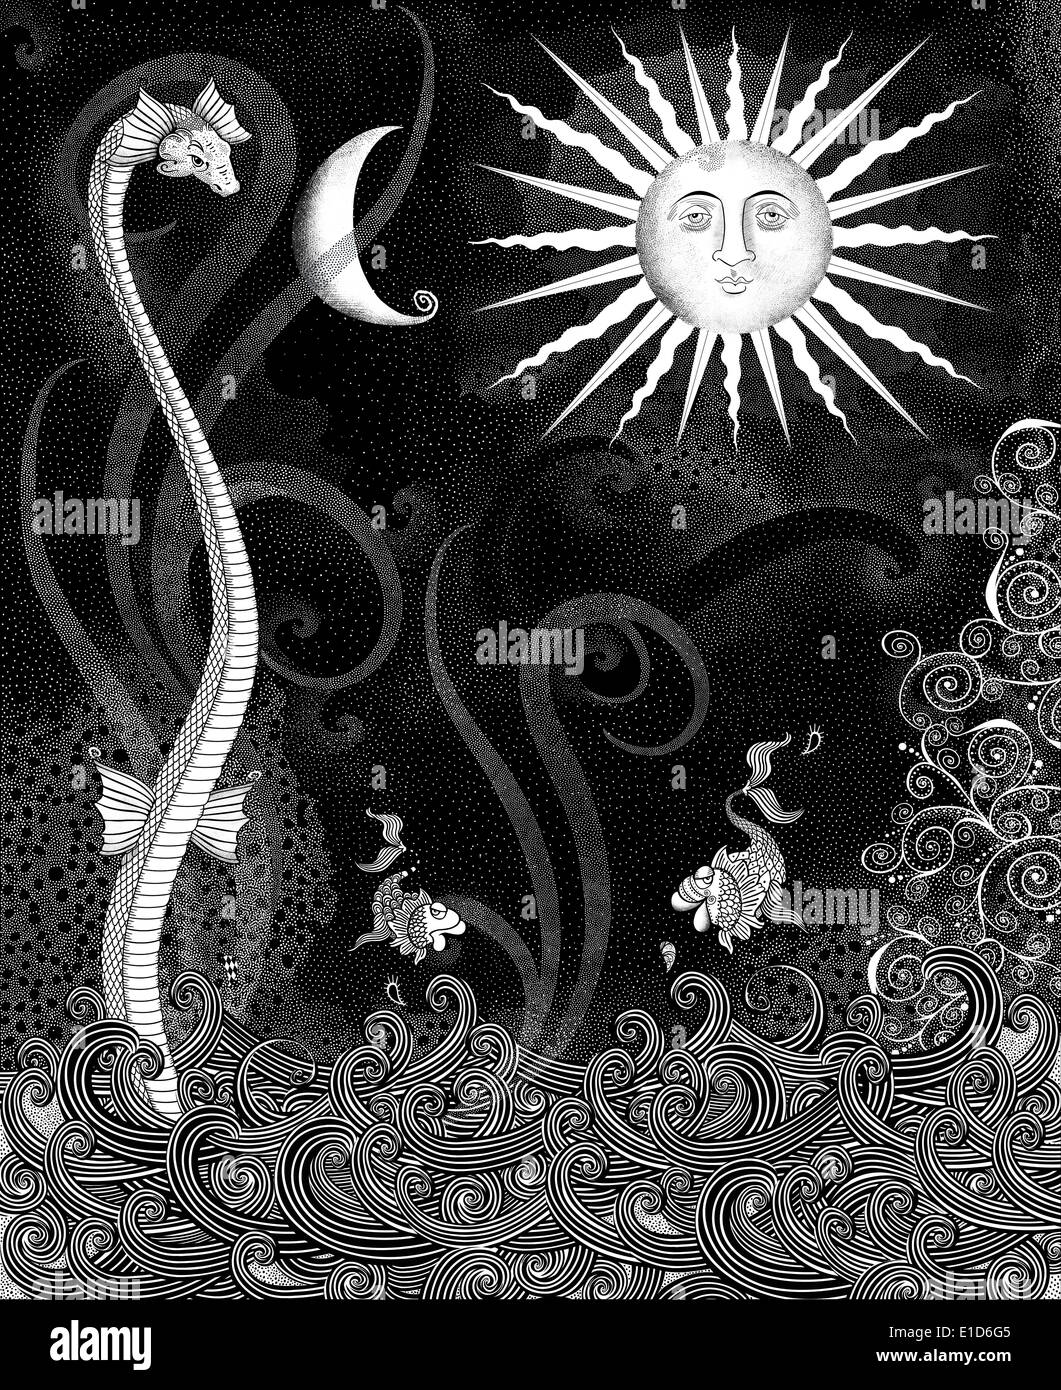 Serpent de mer dessin de fantaisie Banque D'Images